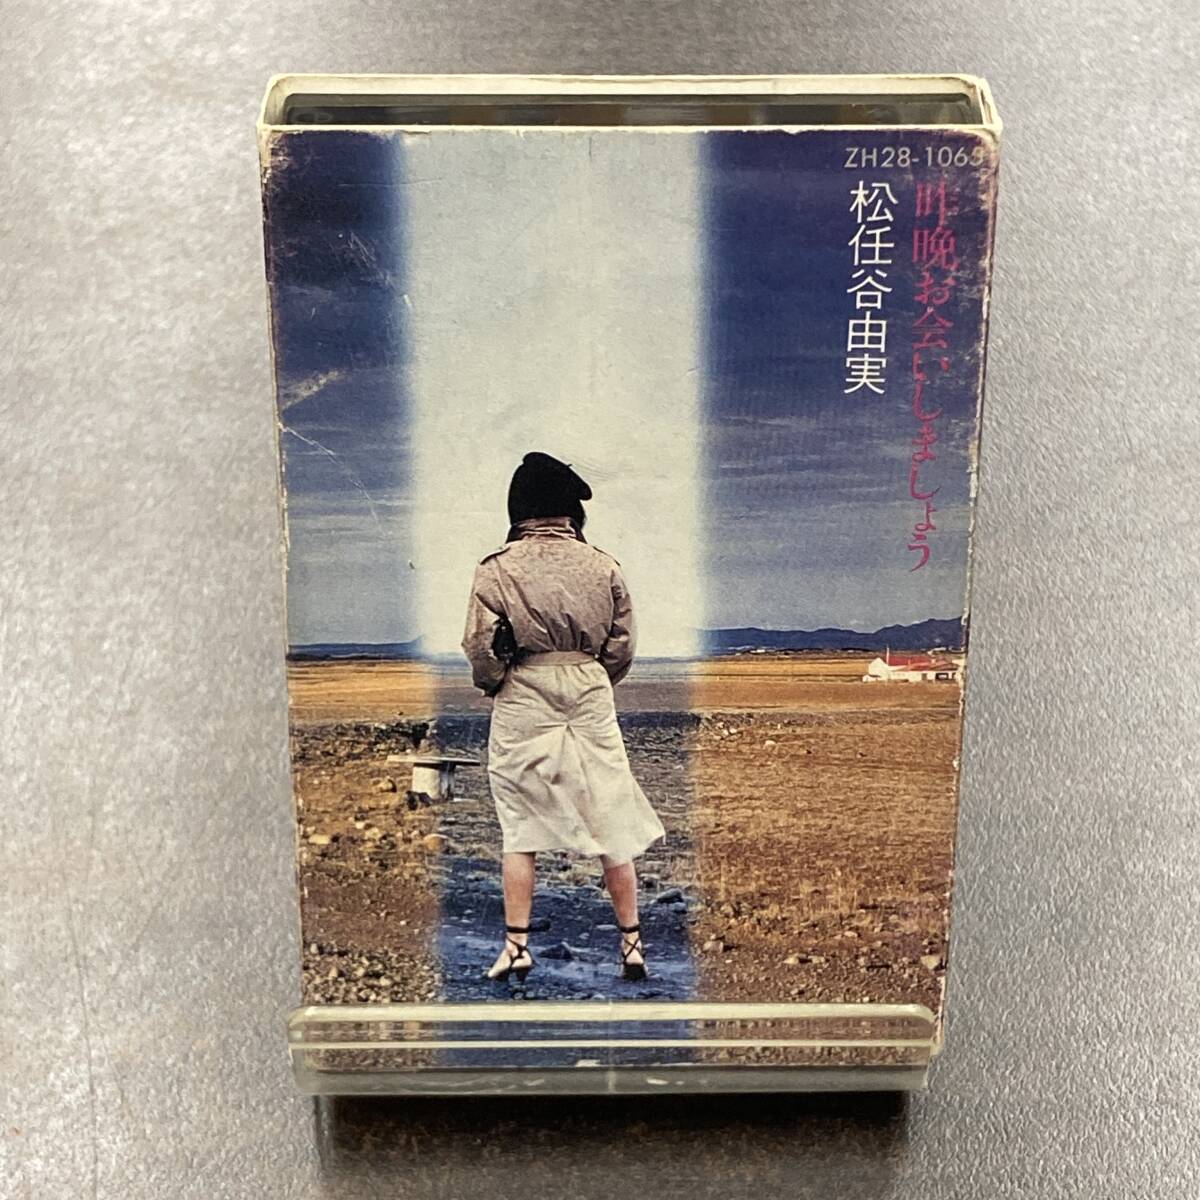 1030M 松任谷由実 昨晩お会いしましょう カセットテープ / Yumi Matsutouya Citypop Cassette Tapeの画像1